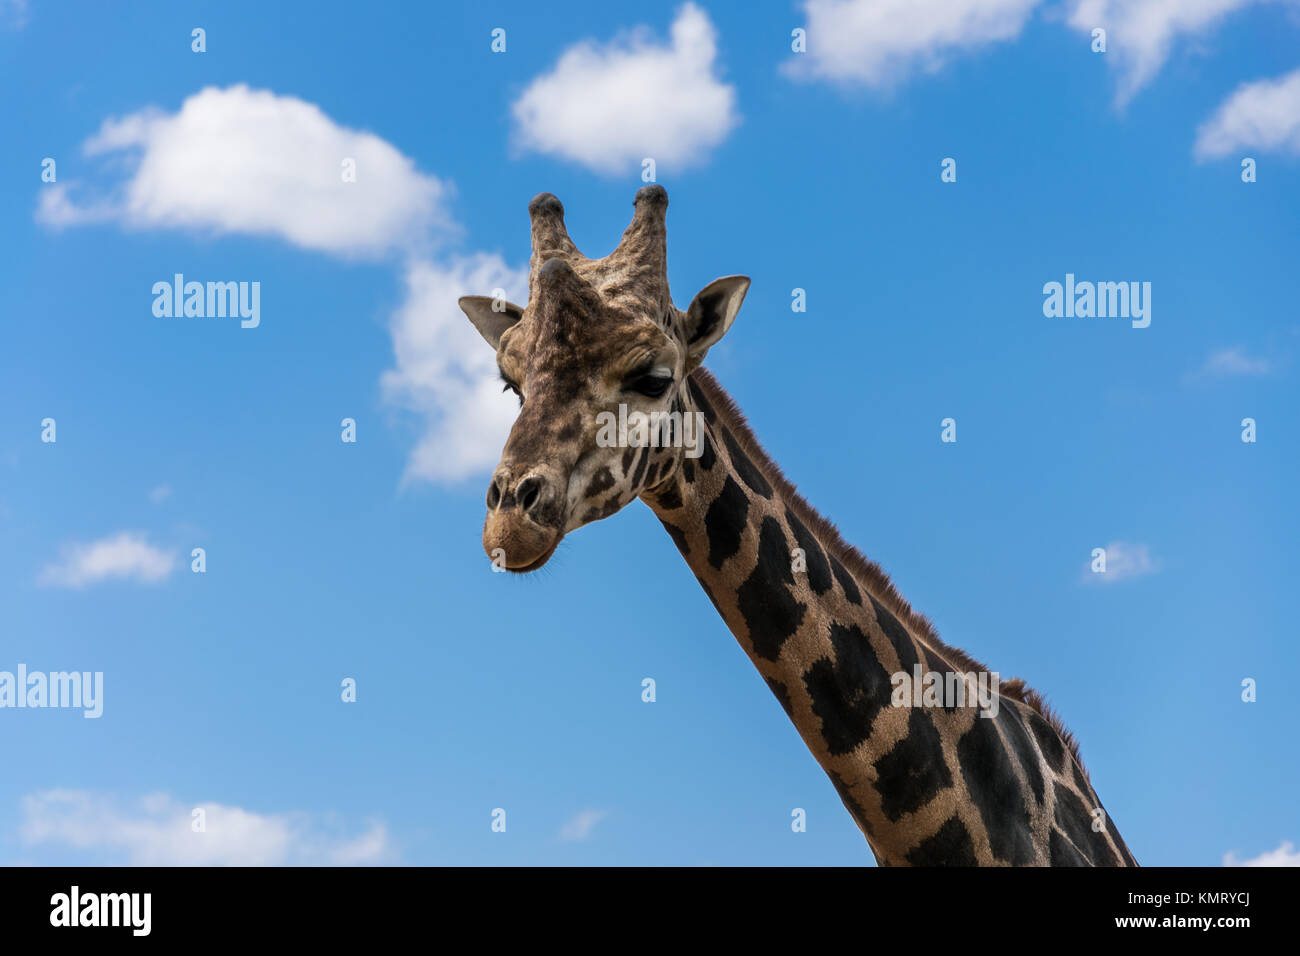 Portrait de girafe au milieu des nuages Banque D'Images